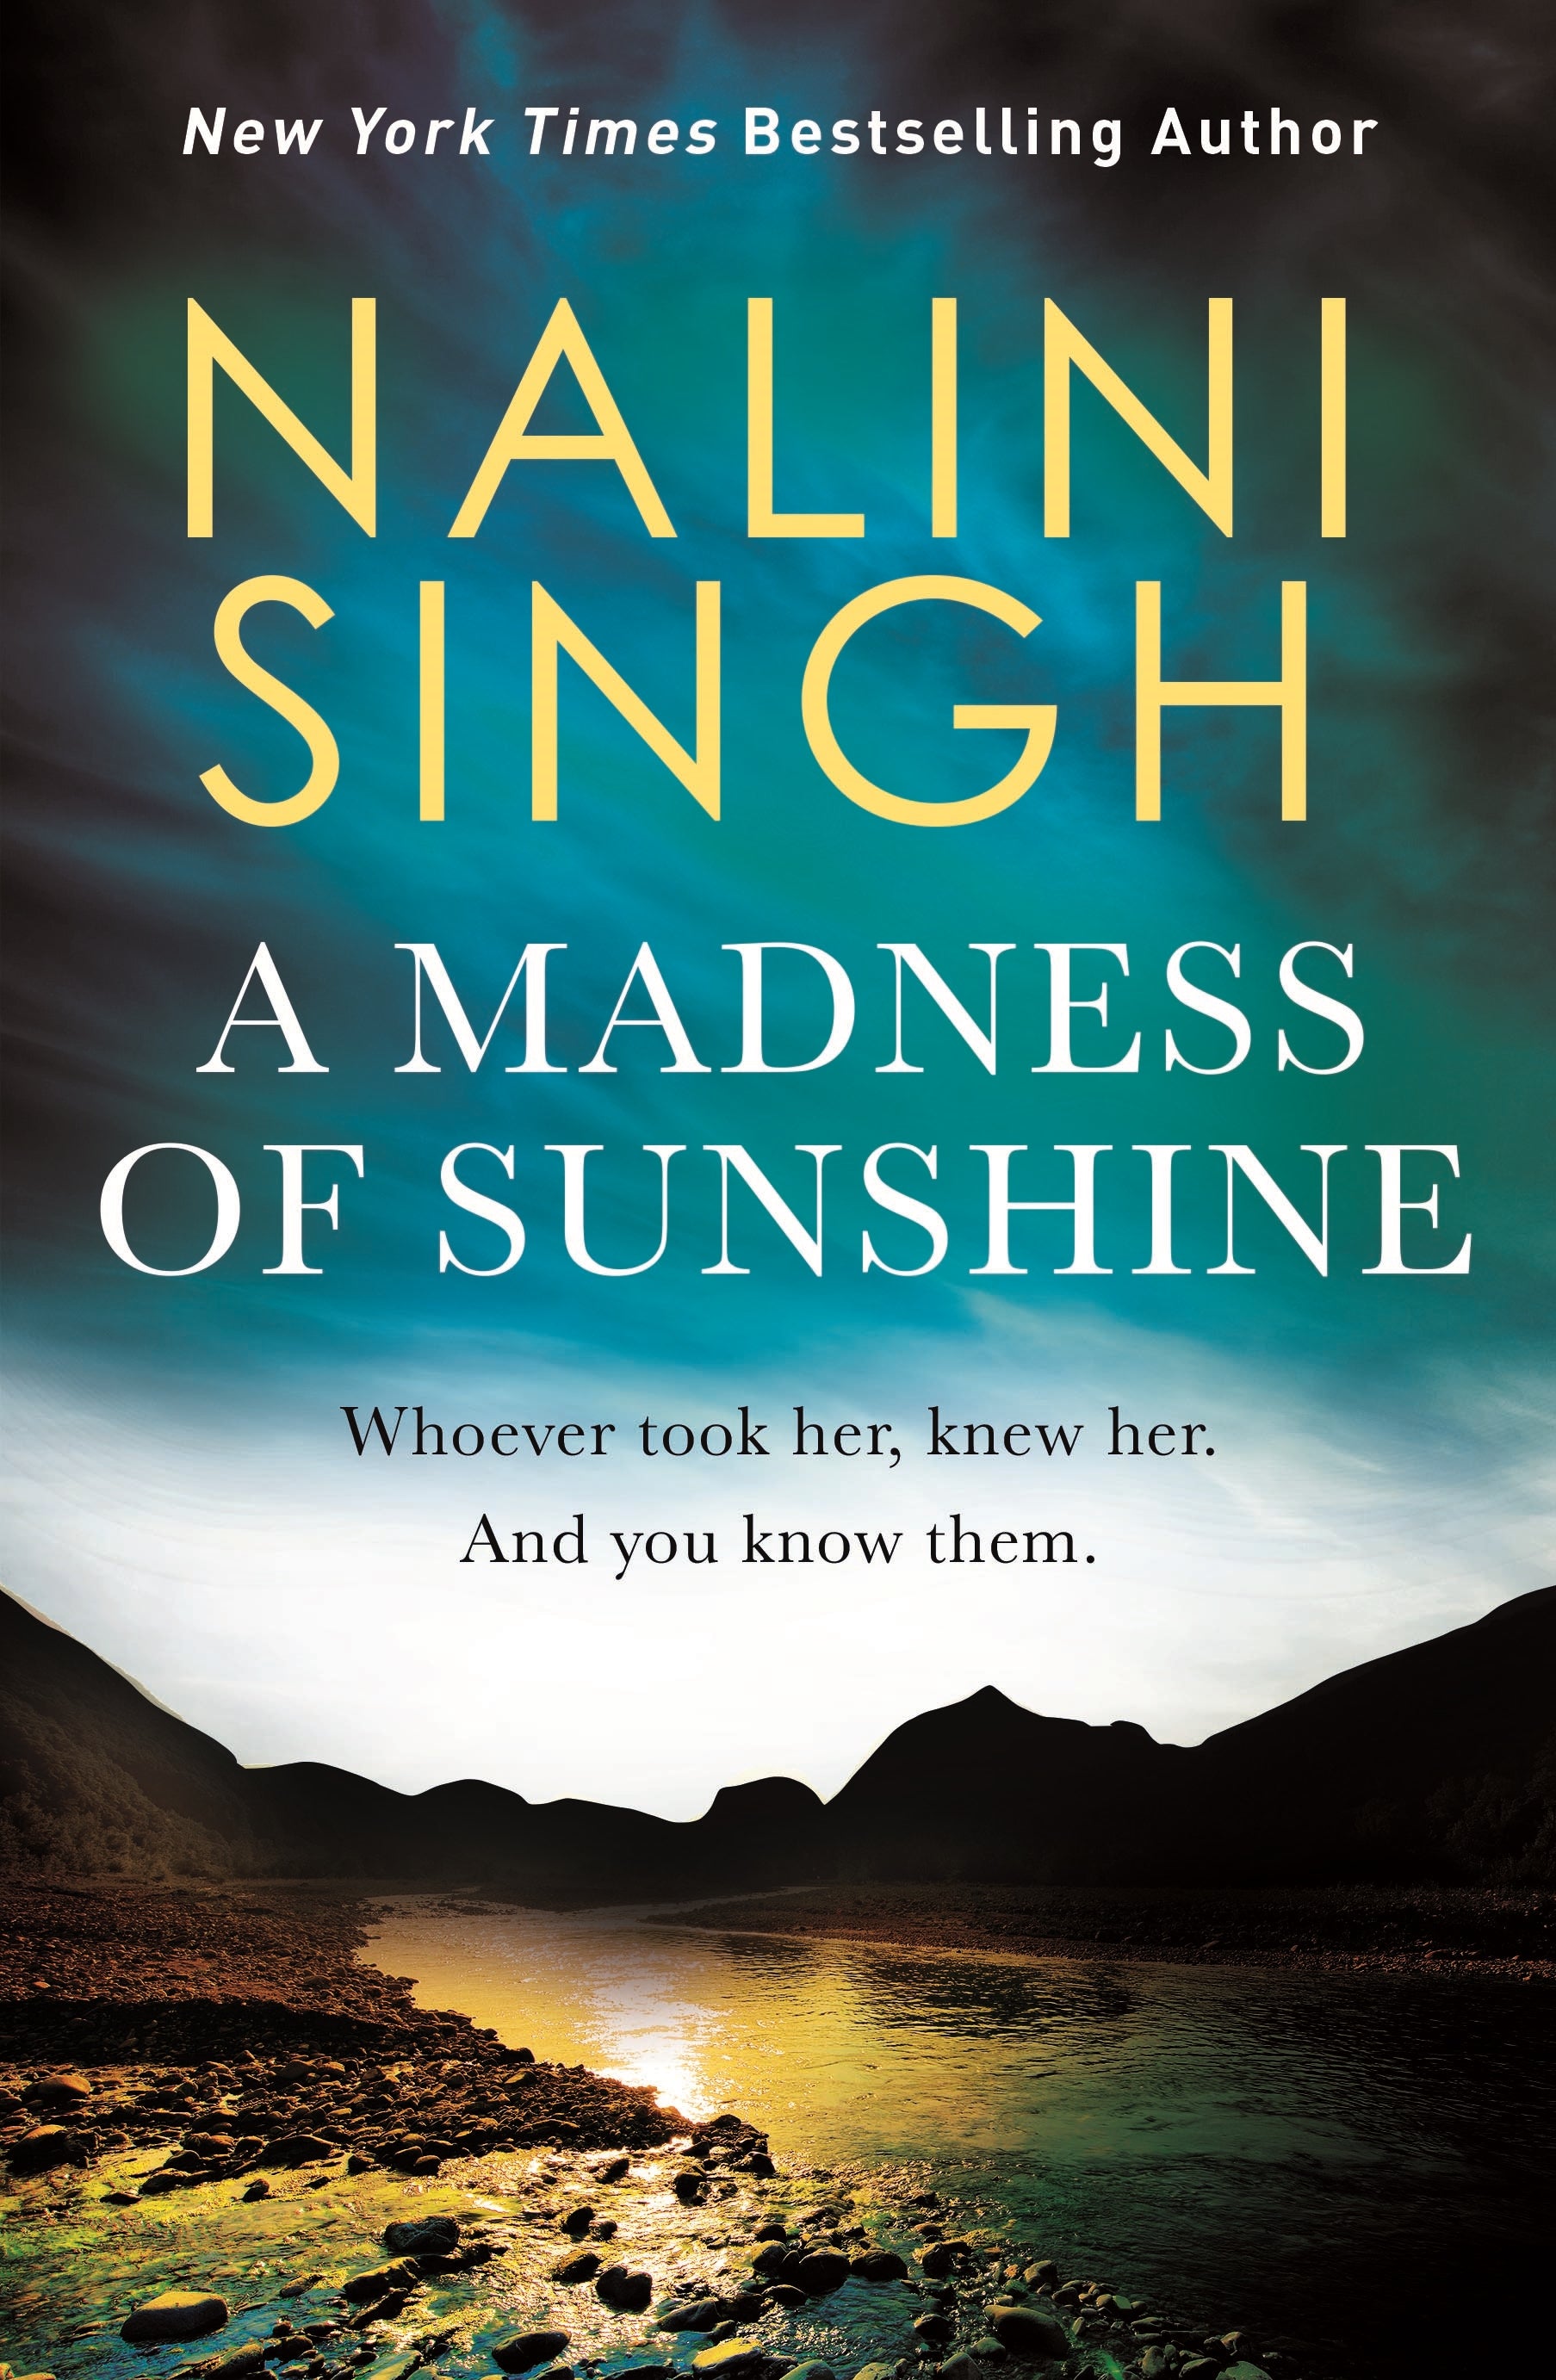 A Madness of Sunshine by Nalini Singh